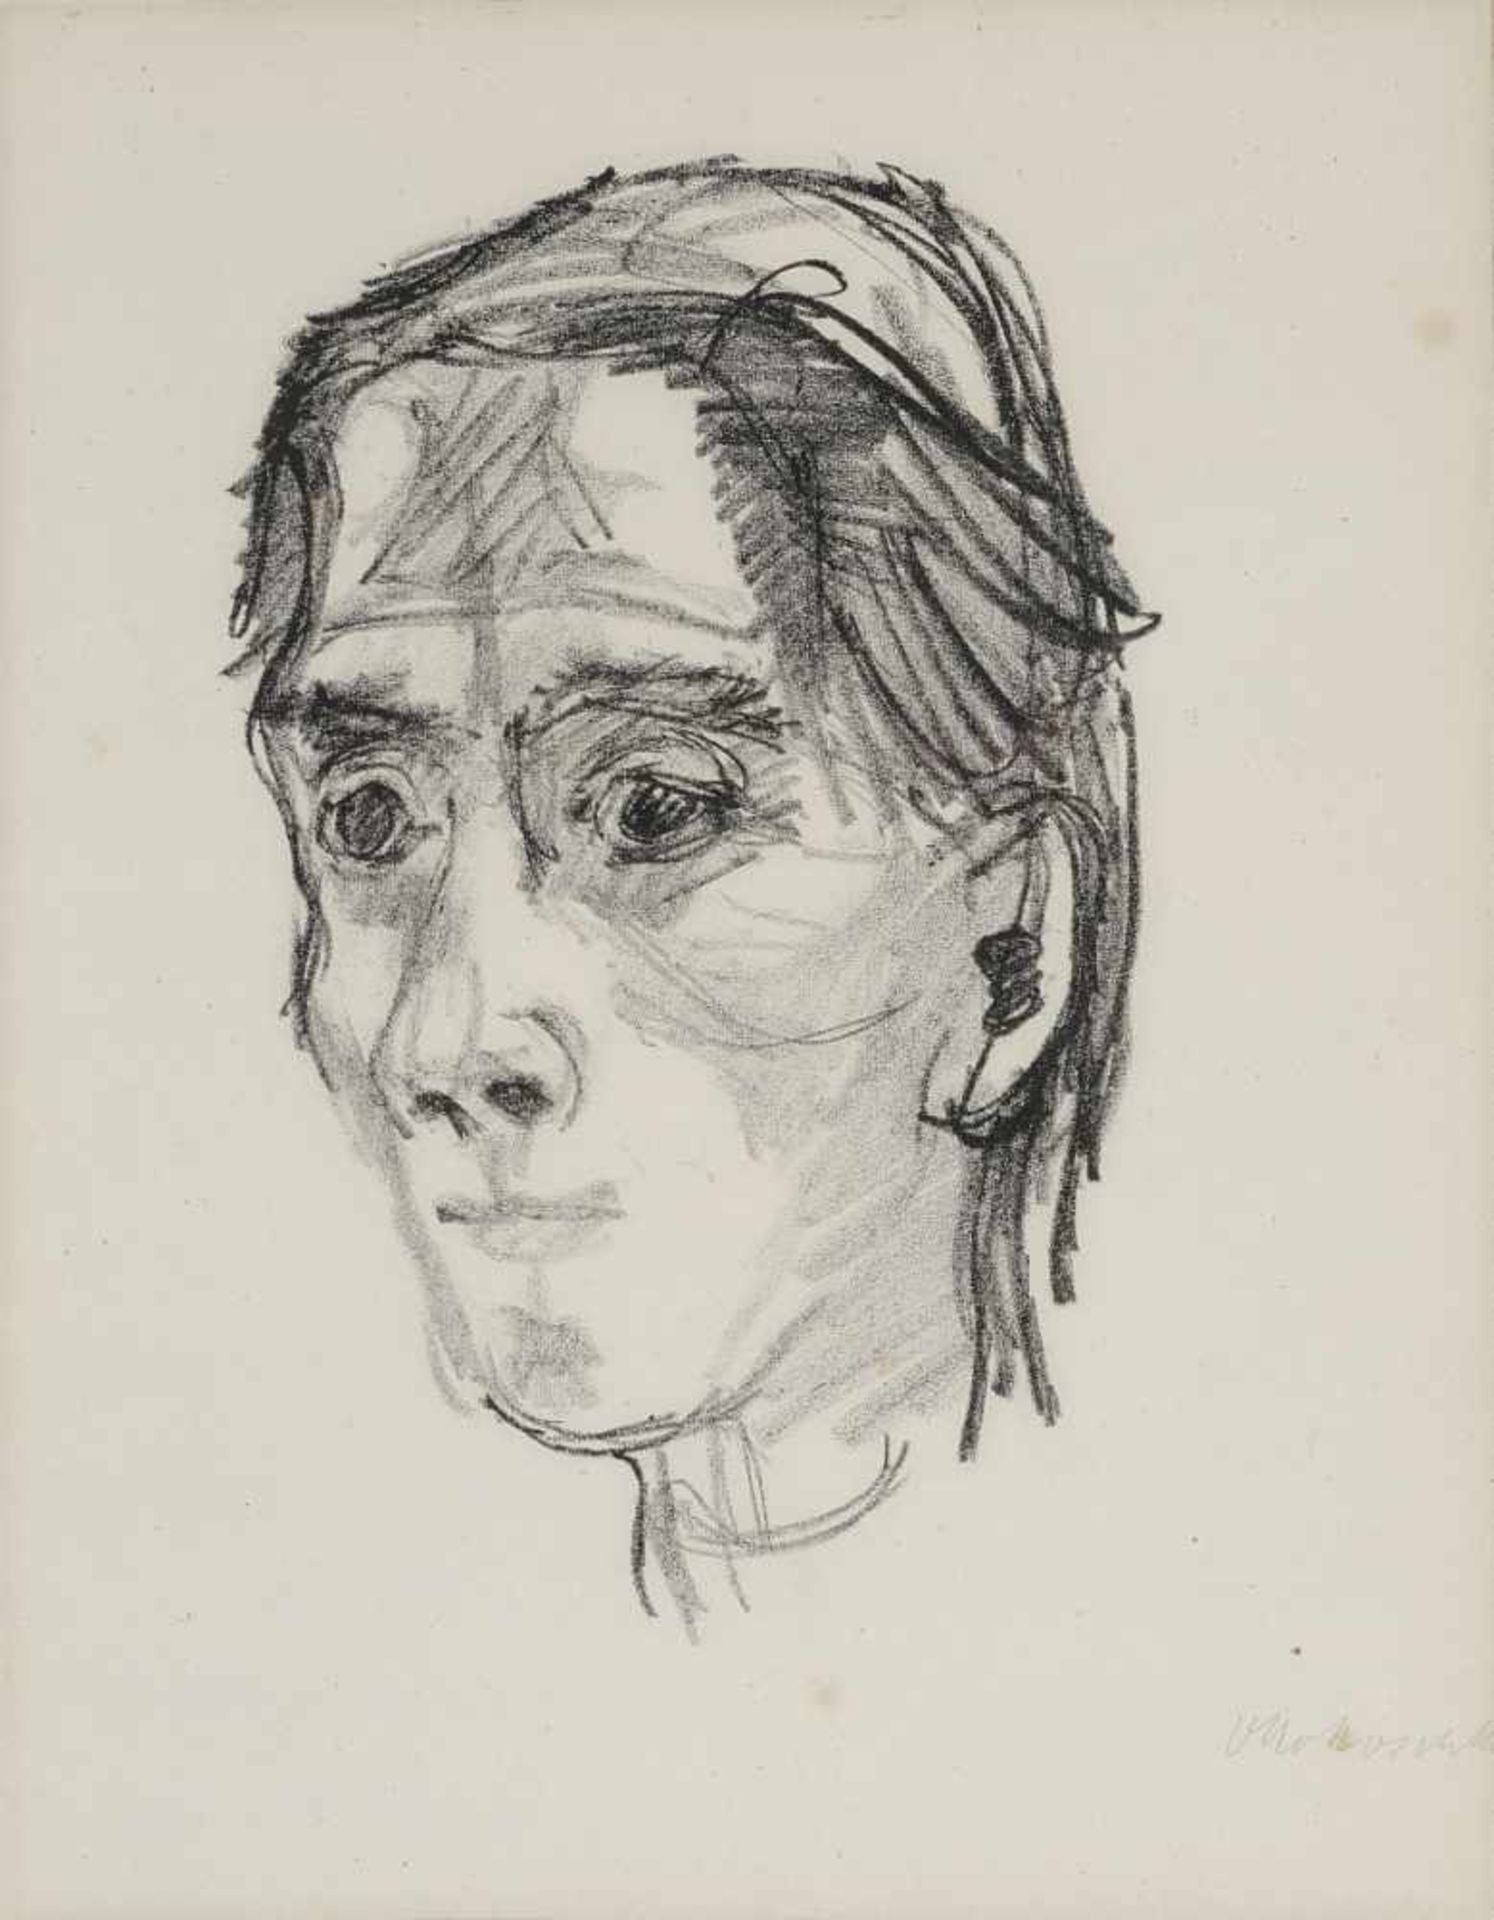 Kokoschka, Oskar 1886 Pöchlarn - 1980 Montreux Das Gesicht des Weibes (Porträt Alma Mahler). - Bild 2 aus 2